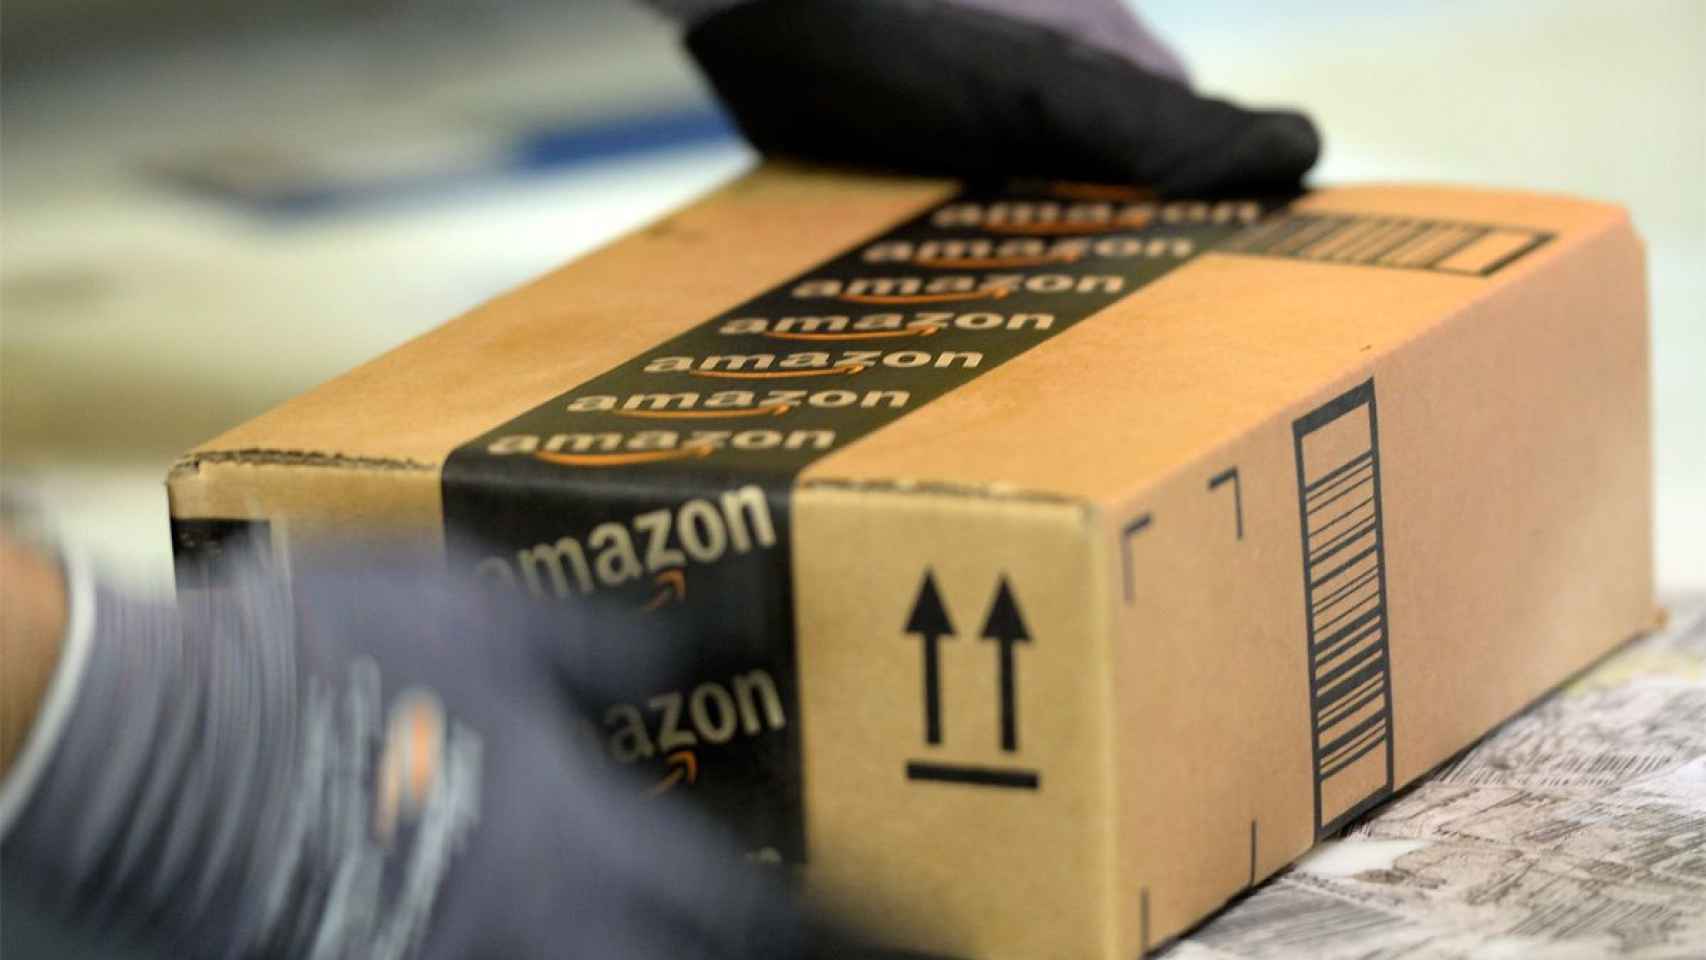 Un paquete de Amazon listo para enviar a su destino